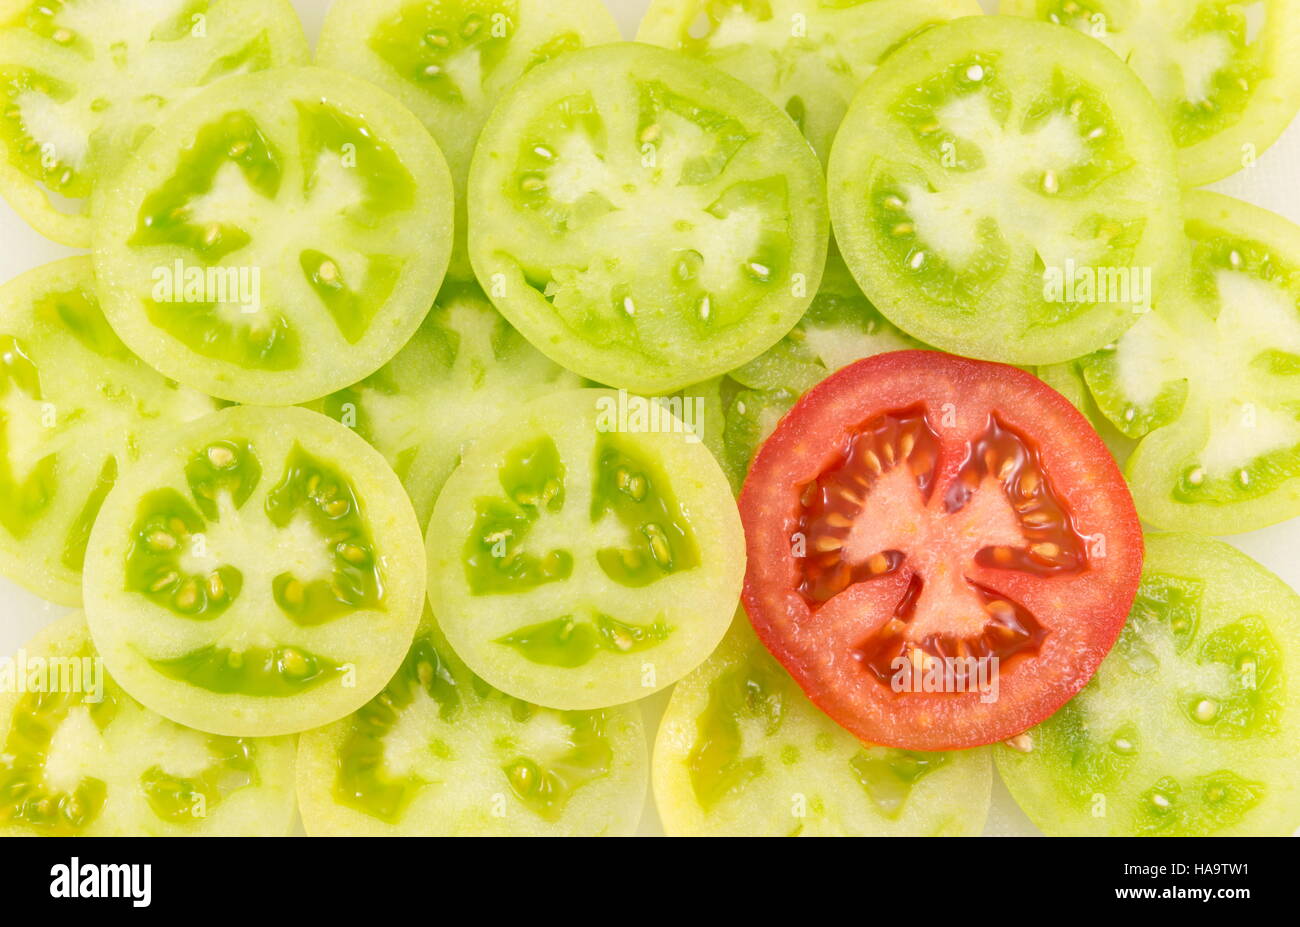 grüne Tomaten in Kreise geschnitten und zusammen angeordnet, neben einem roten Tomatenscheibe Stockfoto